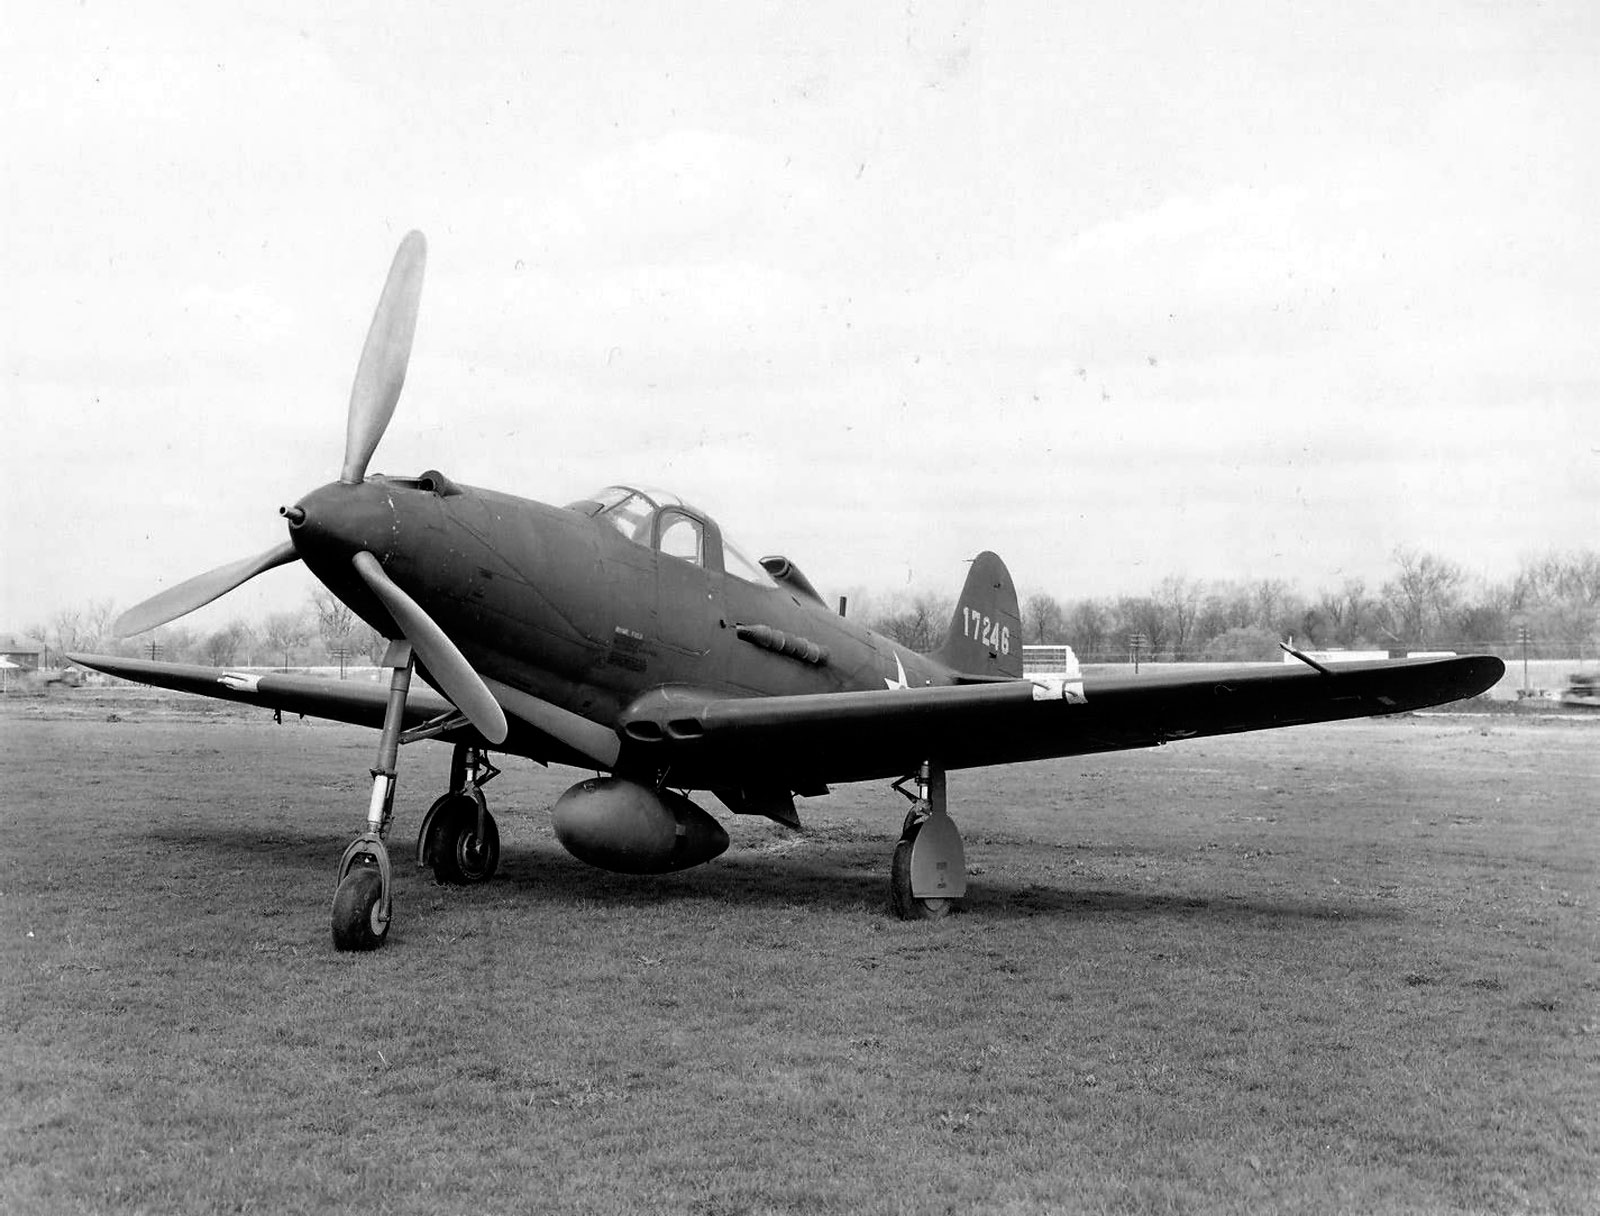 Bell P-39F s/n 41-7246, c "нестандартными" для "F" шестью выхлопными патрубками